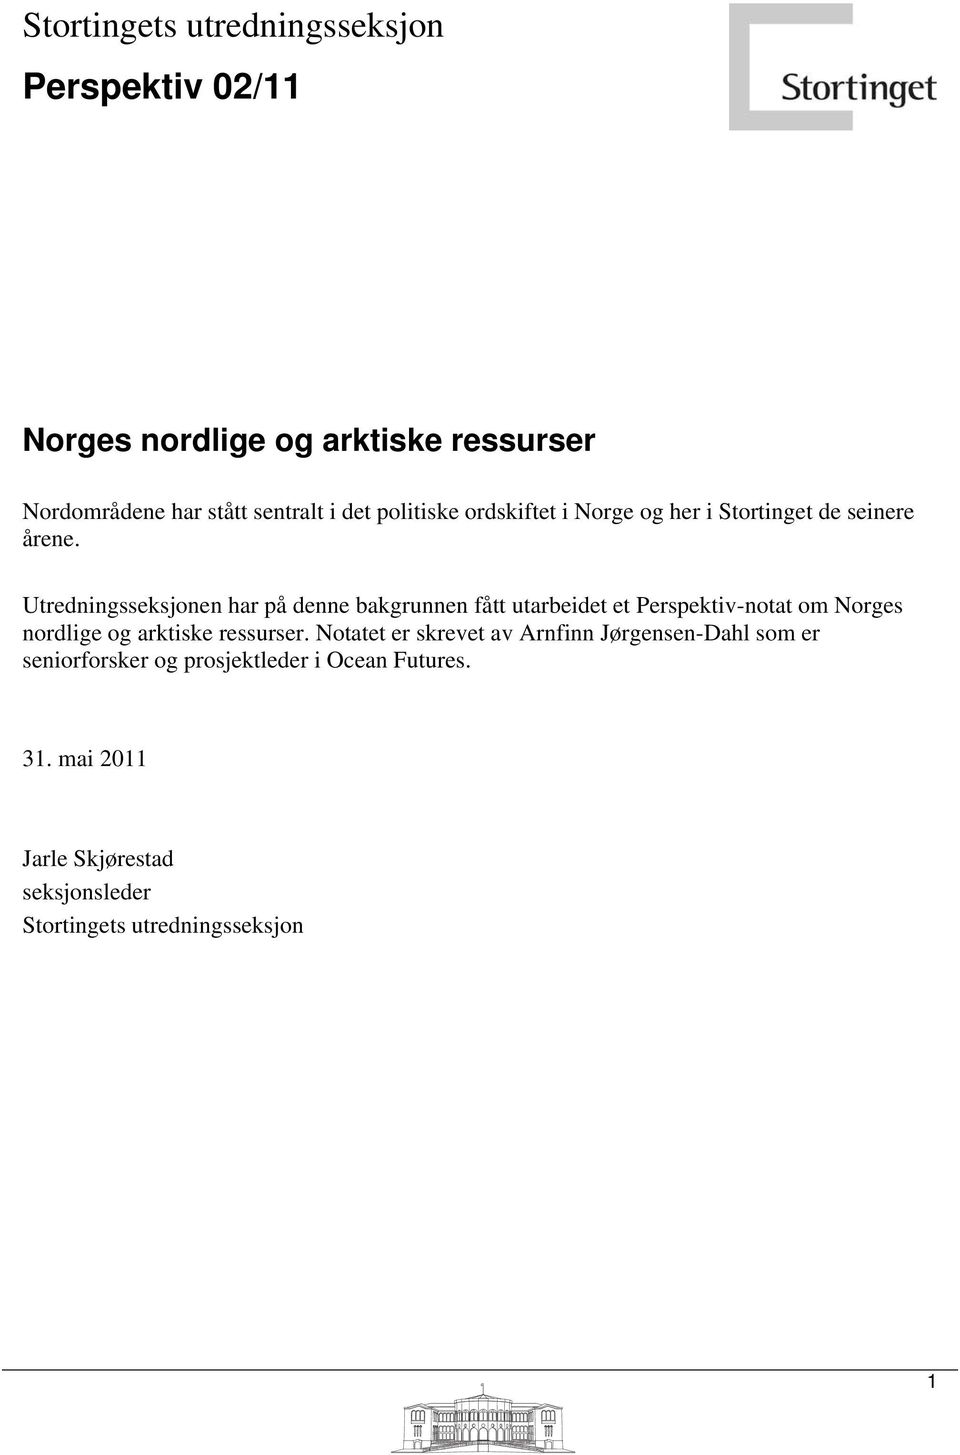 Utredningsseksjonen har på denne bakgrunnen fått utarbeidet et Perspektiv-notat om Norges nordlige og arktiske ressurser.